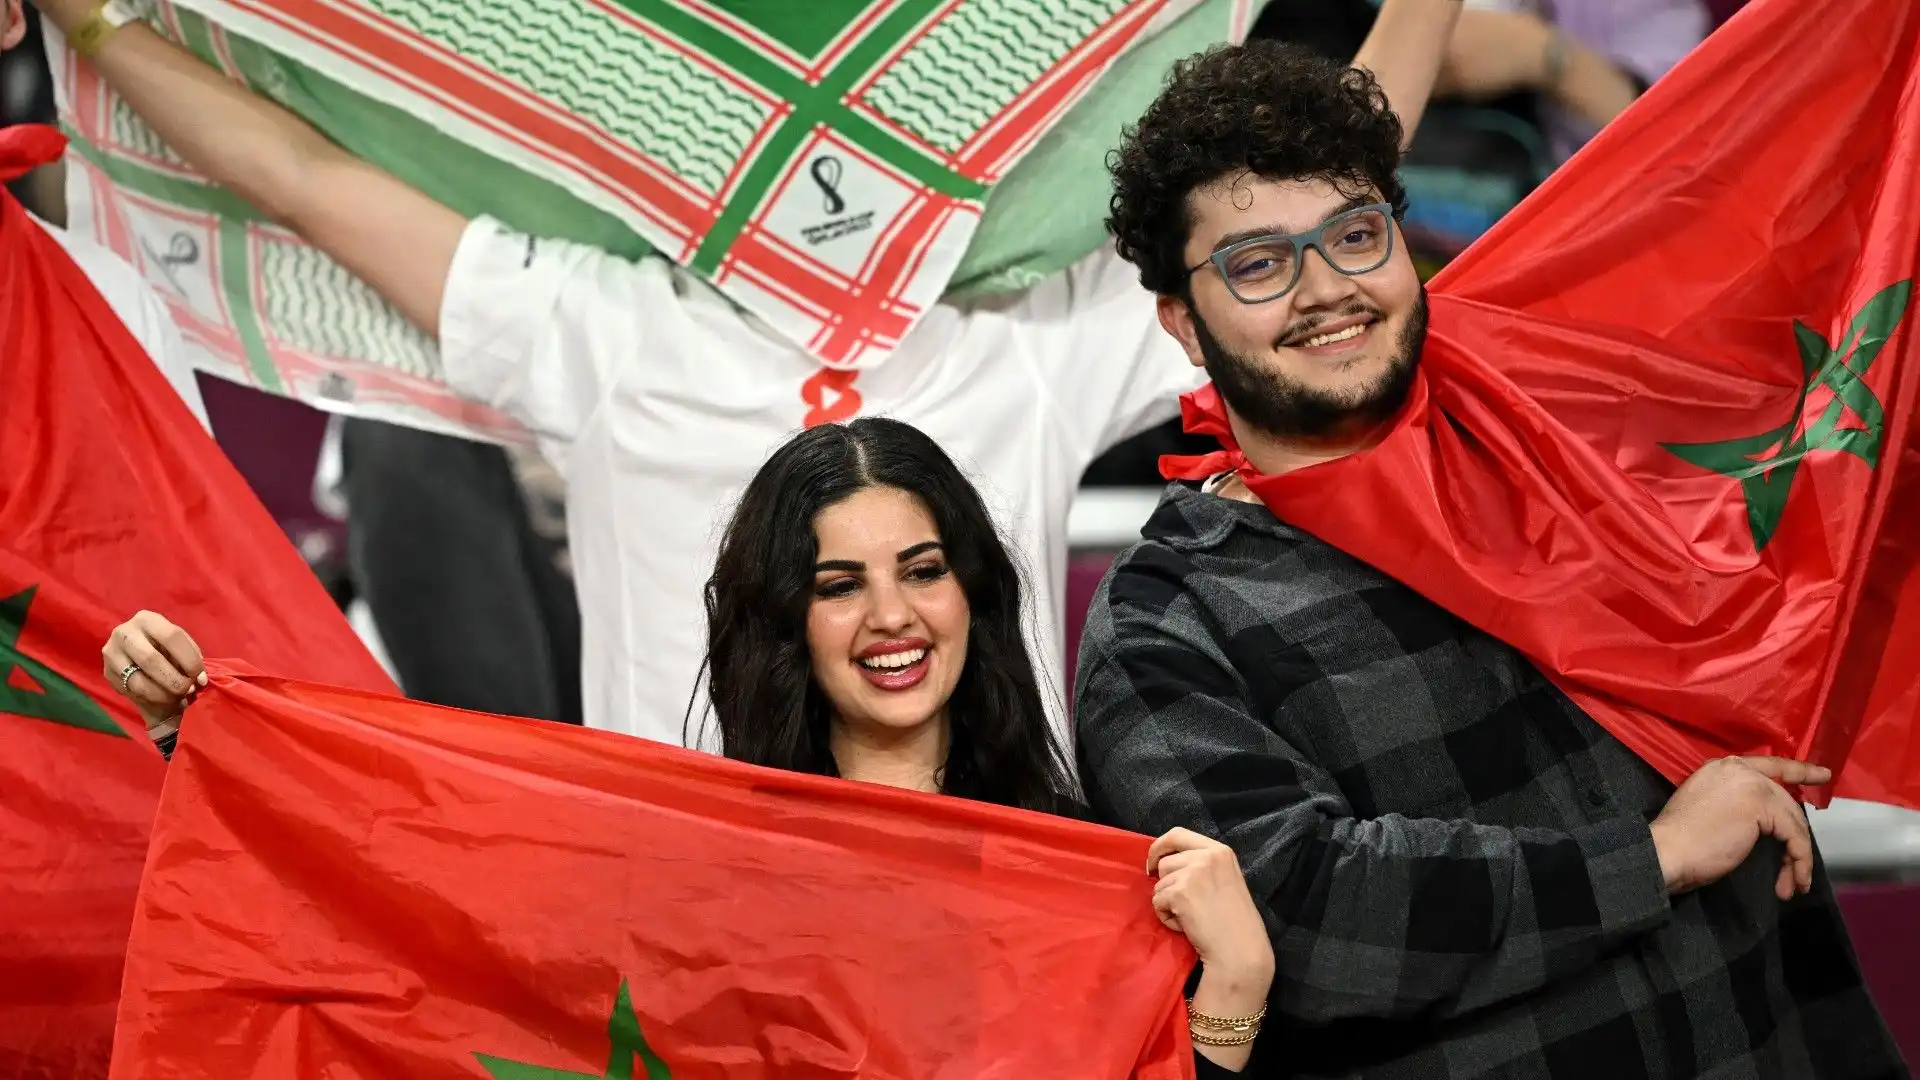 Presenti in grande numero i sostenitori marocchini